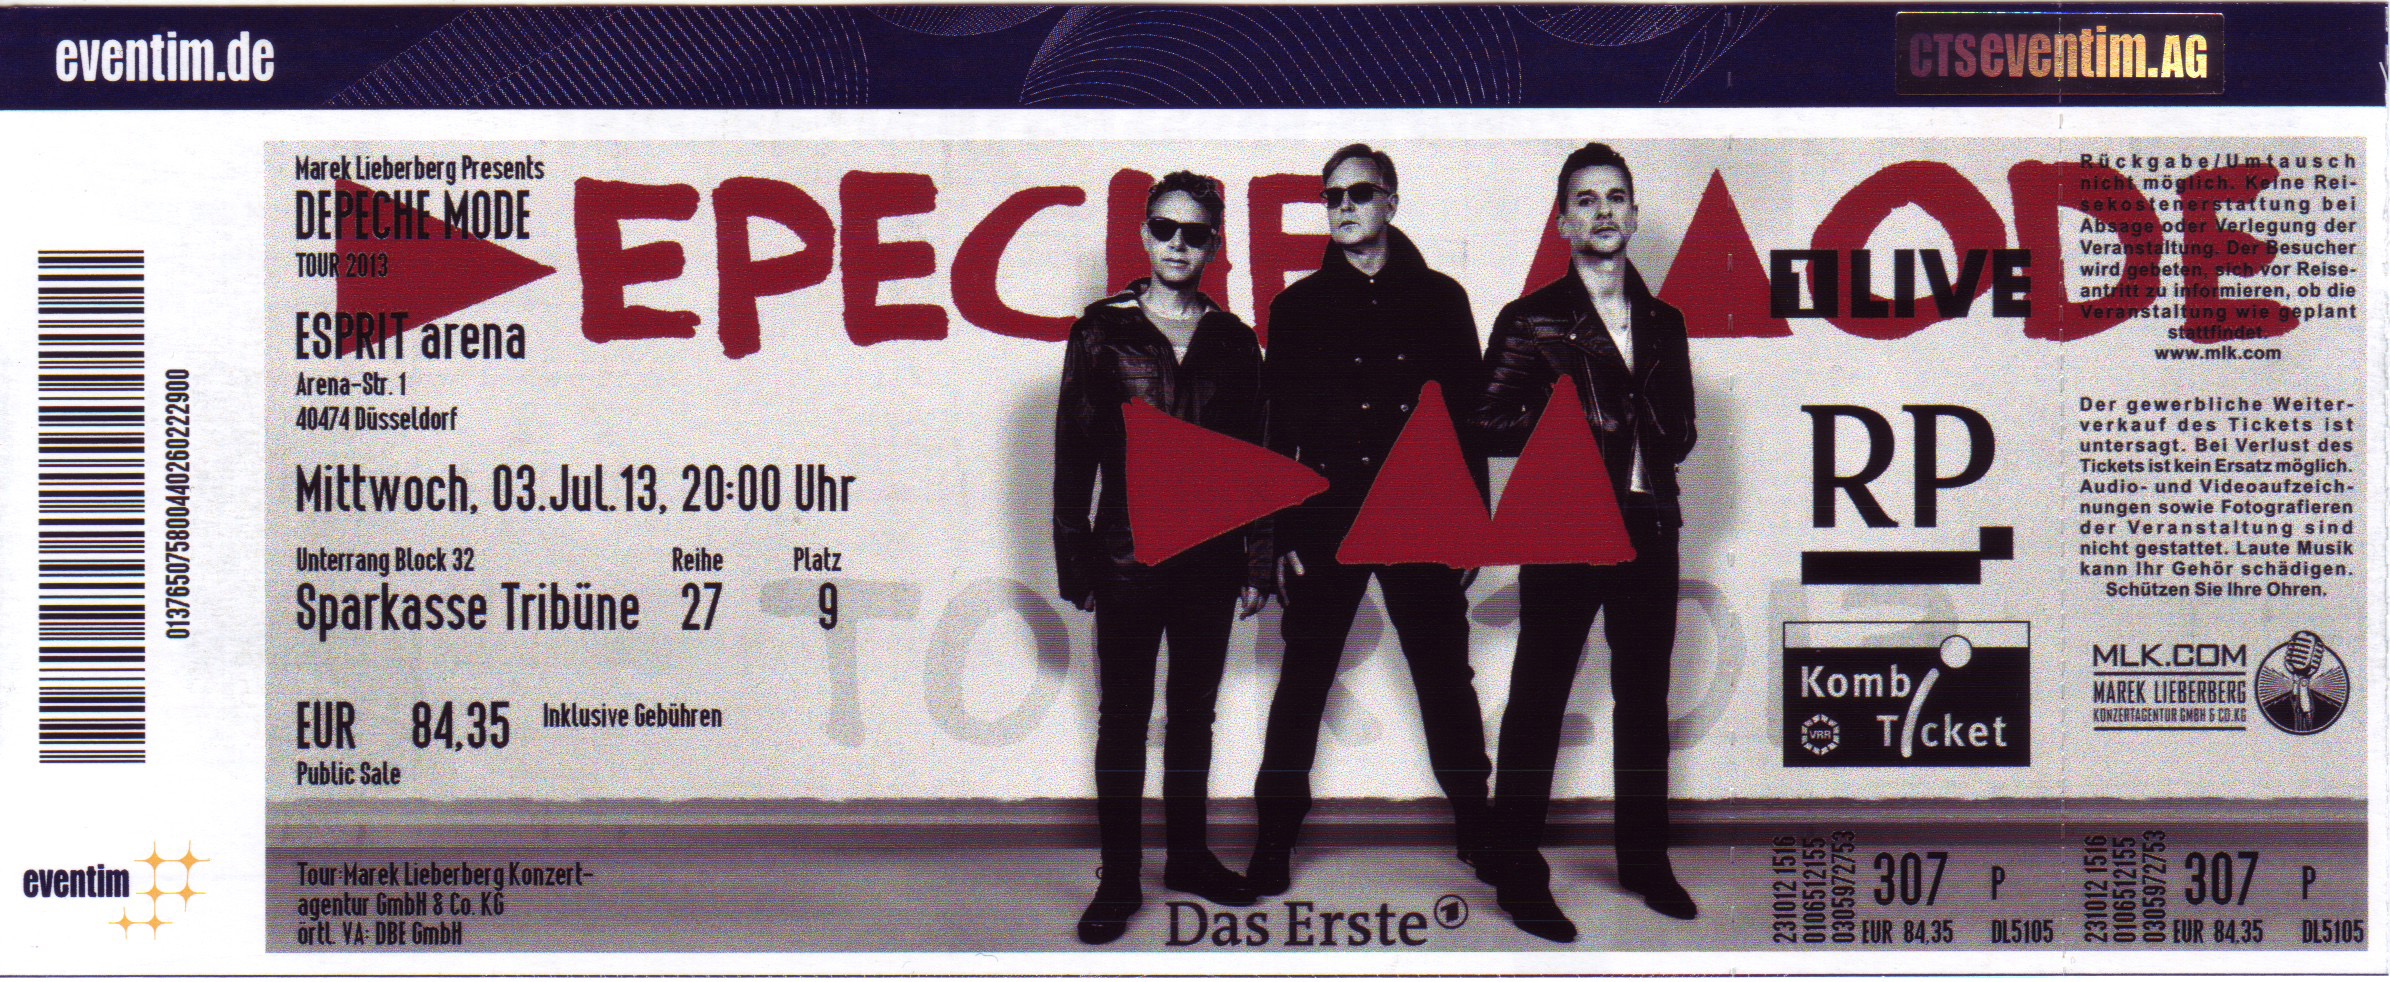 03.07.2013 – Depeche Mode – Delta Machine @Düsseldorf/Esprit Arena